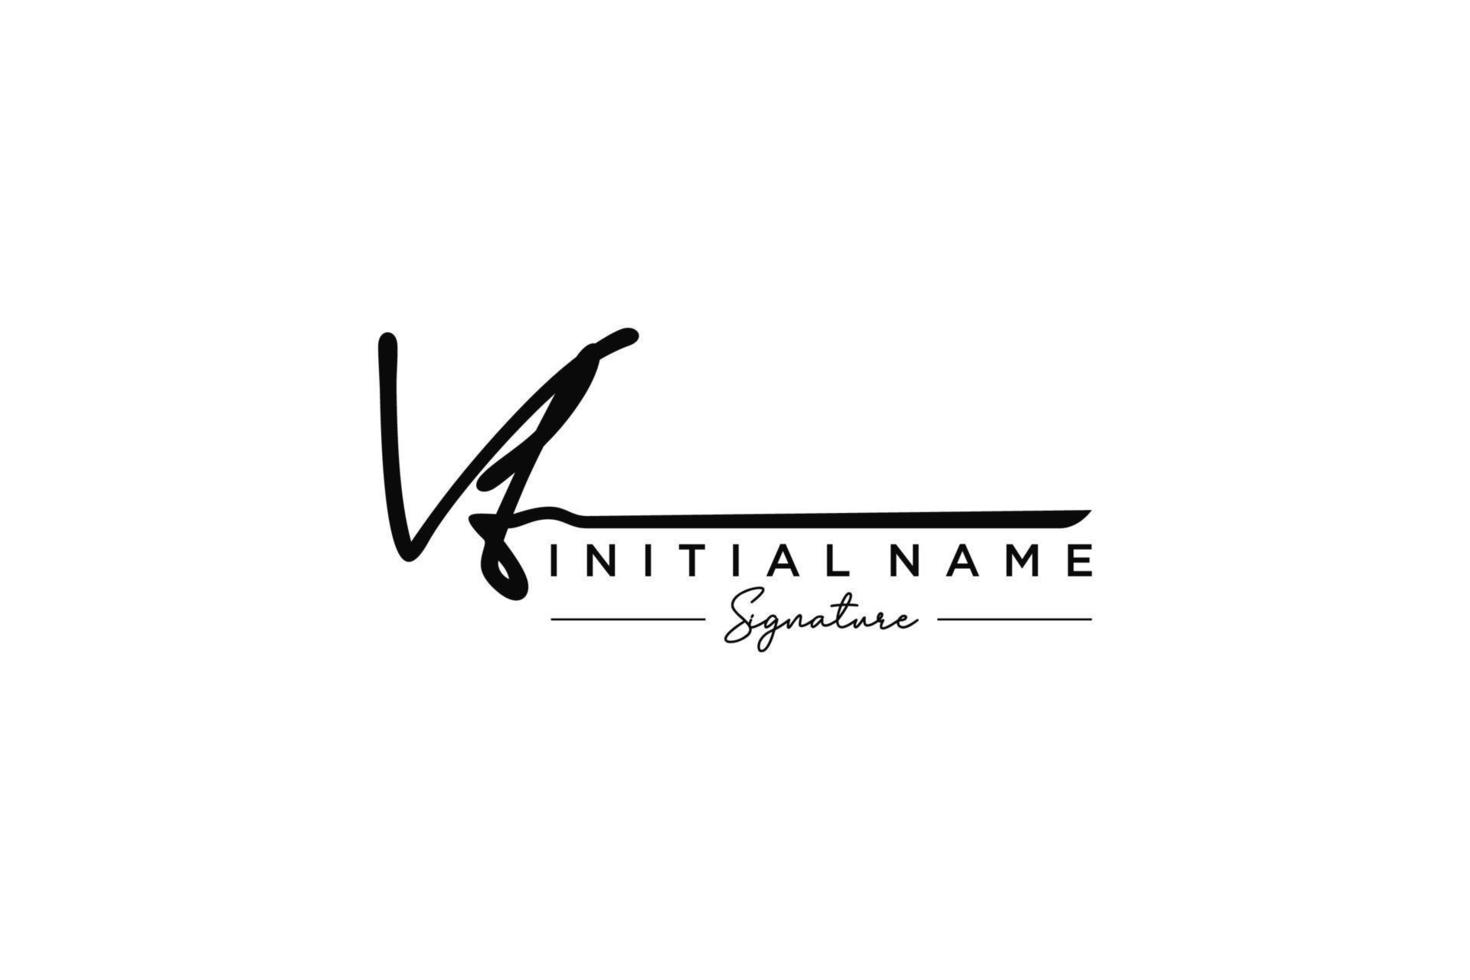 vetor inicial de modelo de logotipo de assinatura vt. ilustração vetorial de letras de caligrafia desenhada à mão.